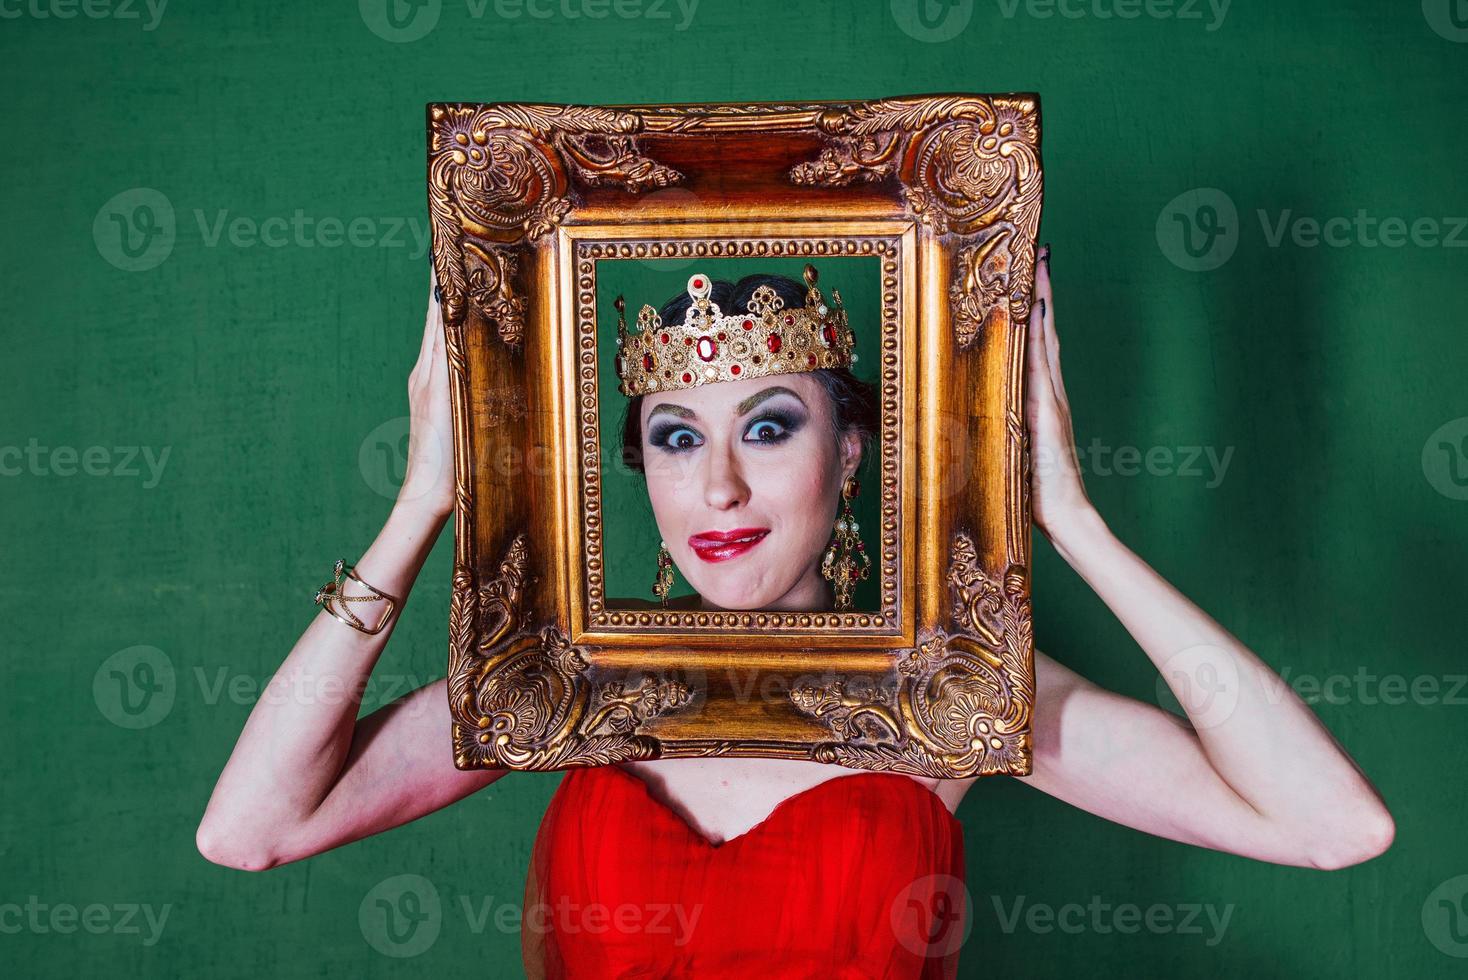 bella mujer con un largo vestido rojo y una corona real junto a los marcos dorados foto